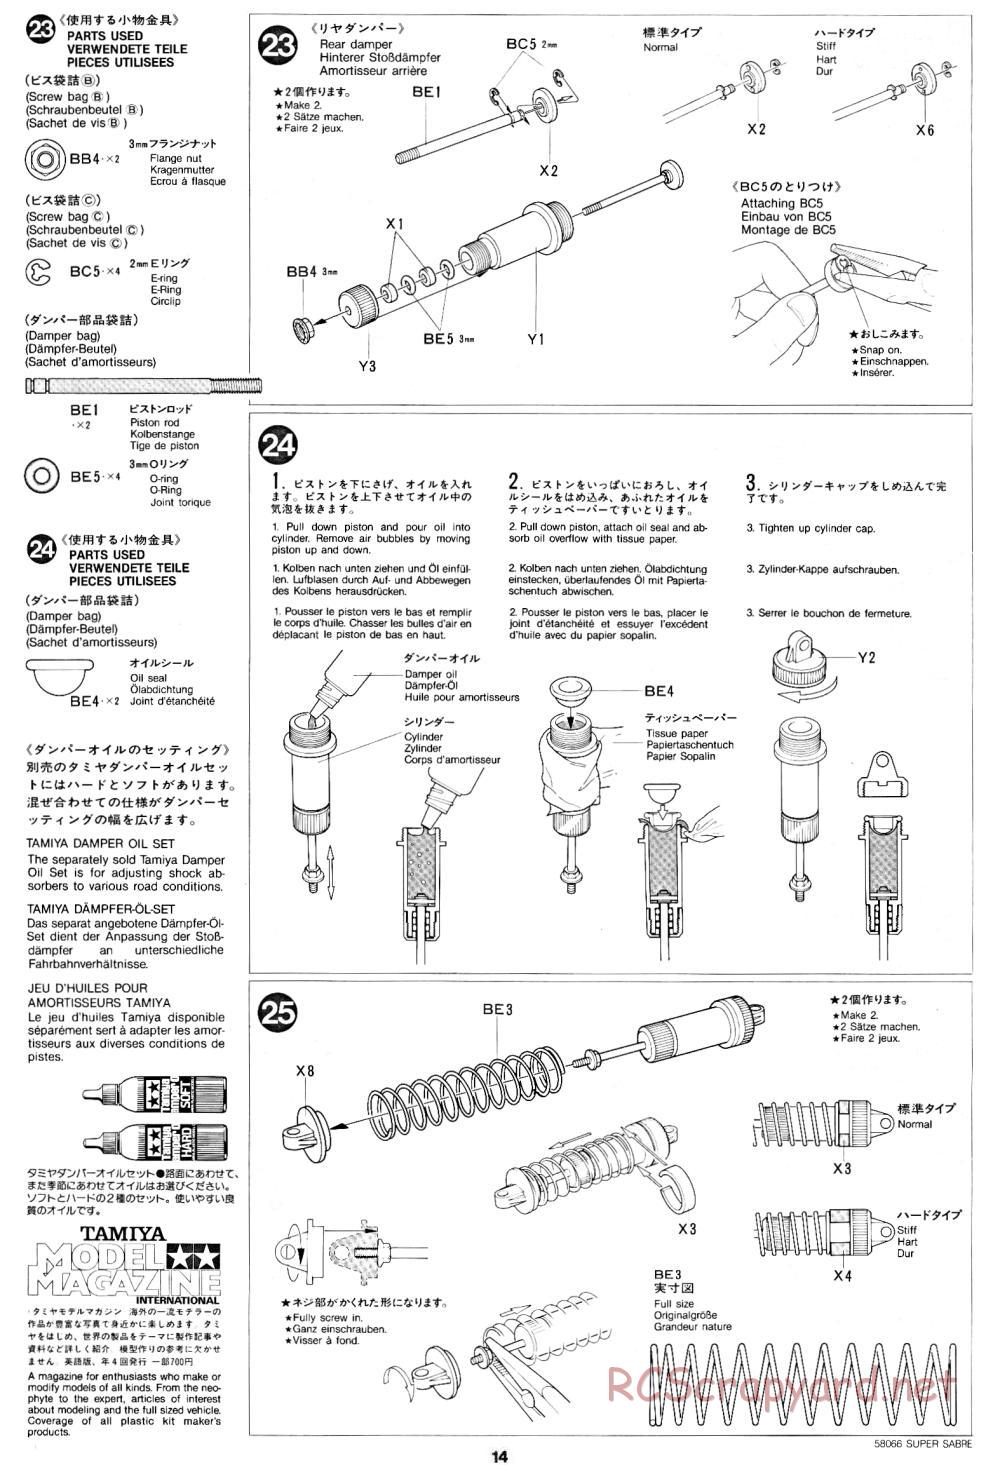 Tamiya - Super Sabre - 58066 - Manual - Page 14